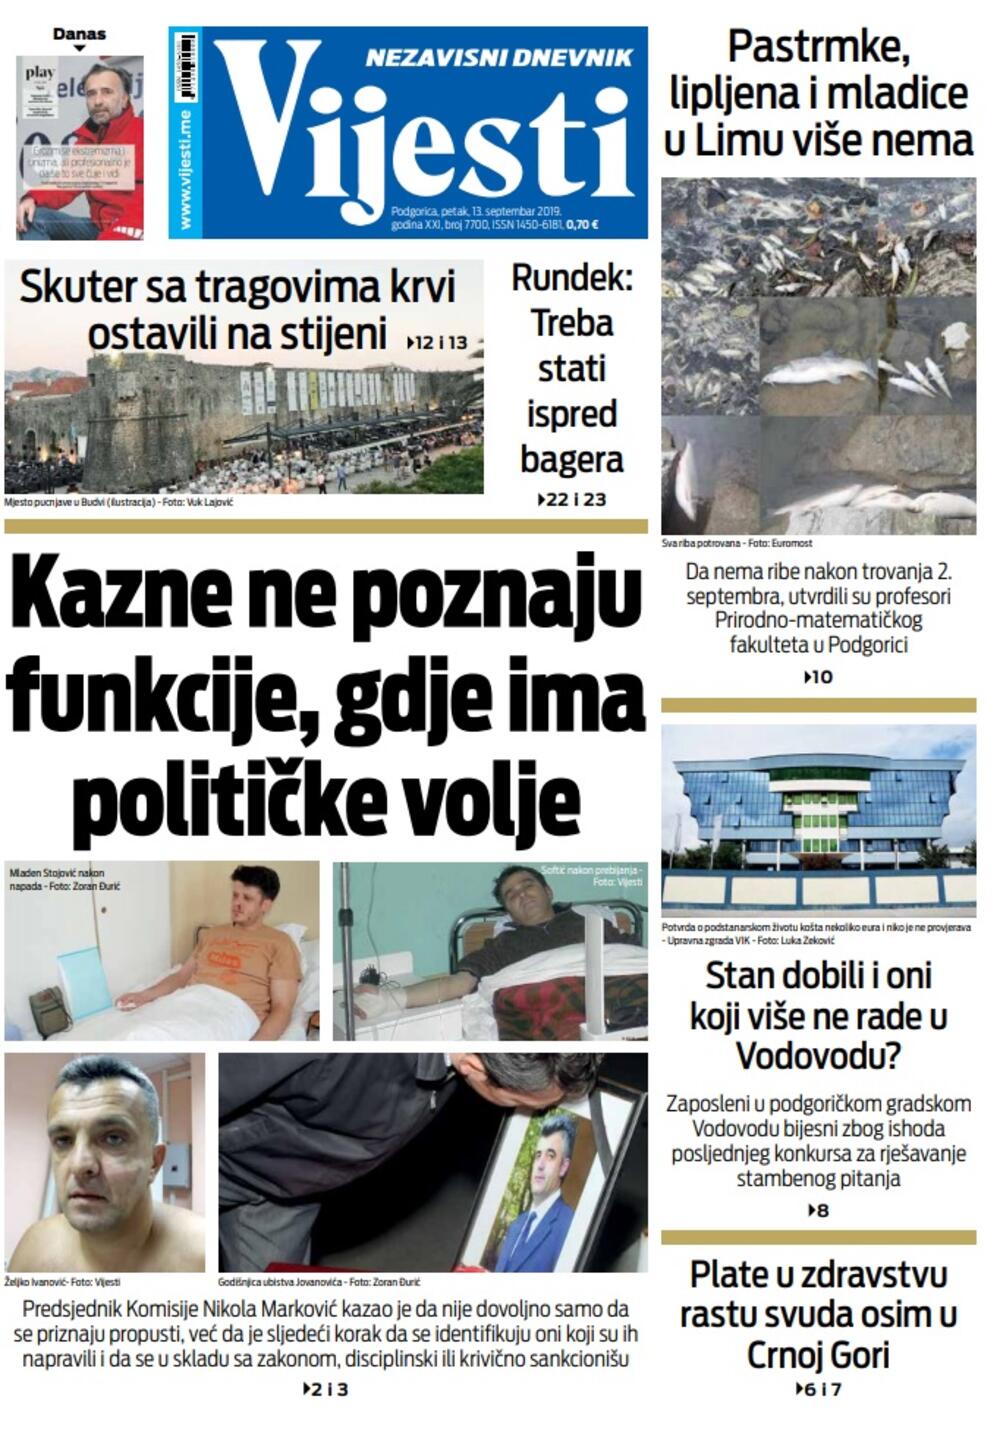 Naslovna strana "Vijesti" za 13. septembar, Foto: Vijesti